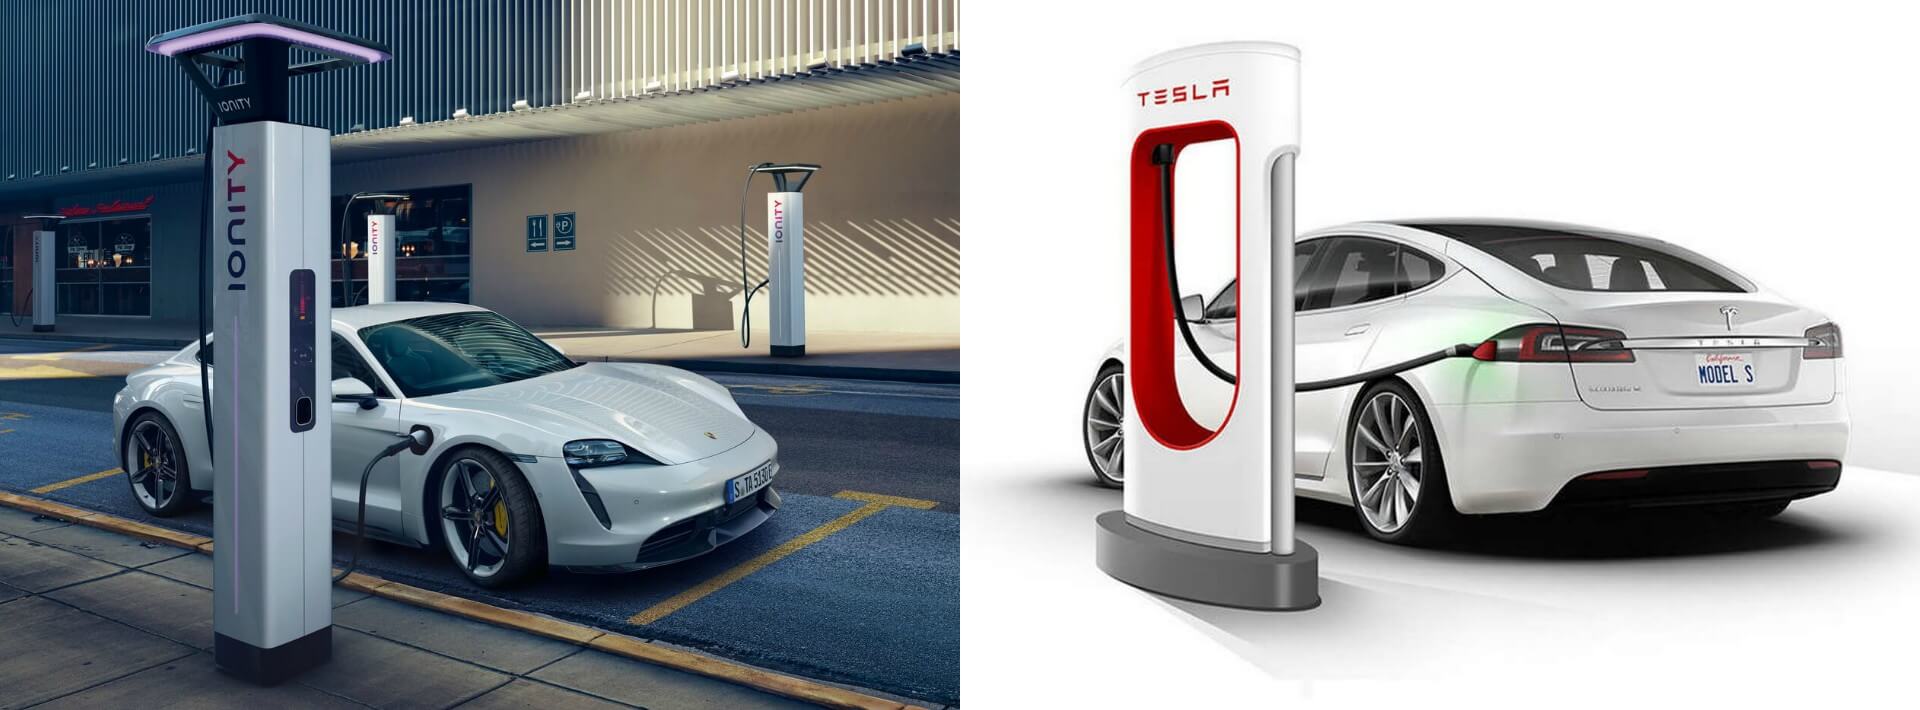 Porsche Taycan заряжается на европейской зарядной станции Ionity и Tesla Model S на станции Supercharger 